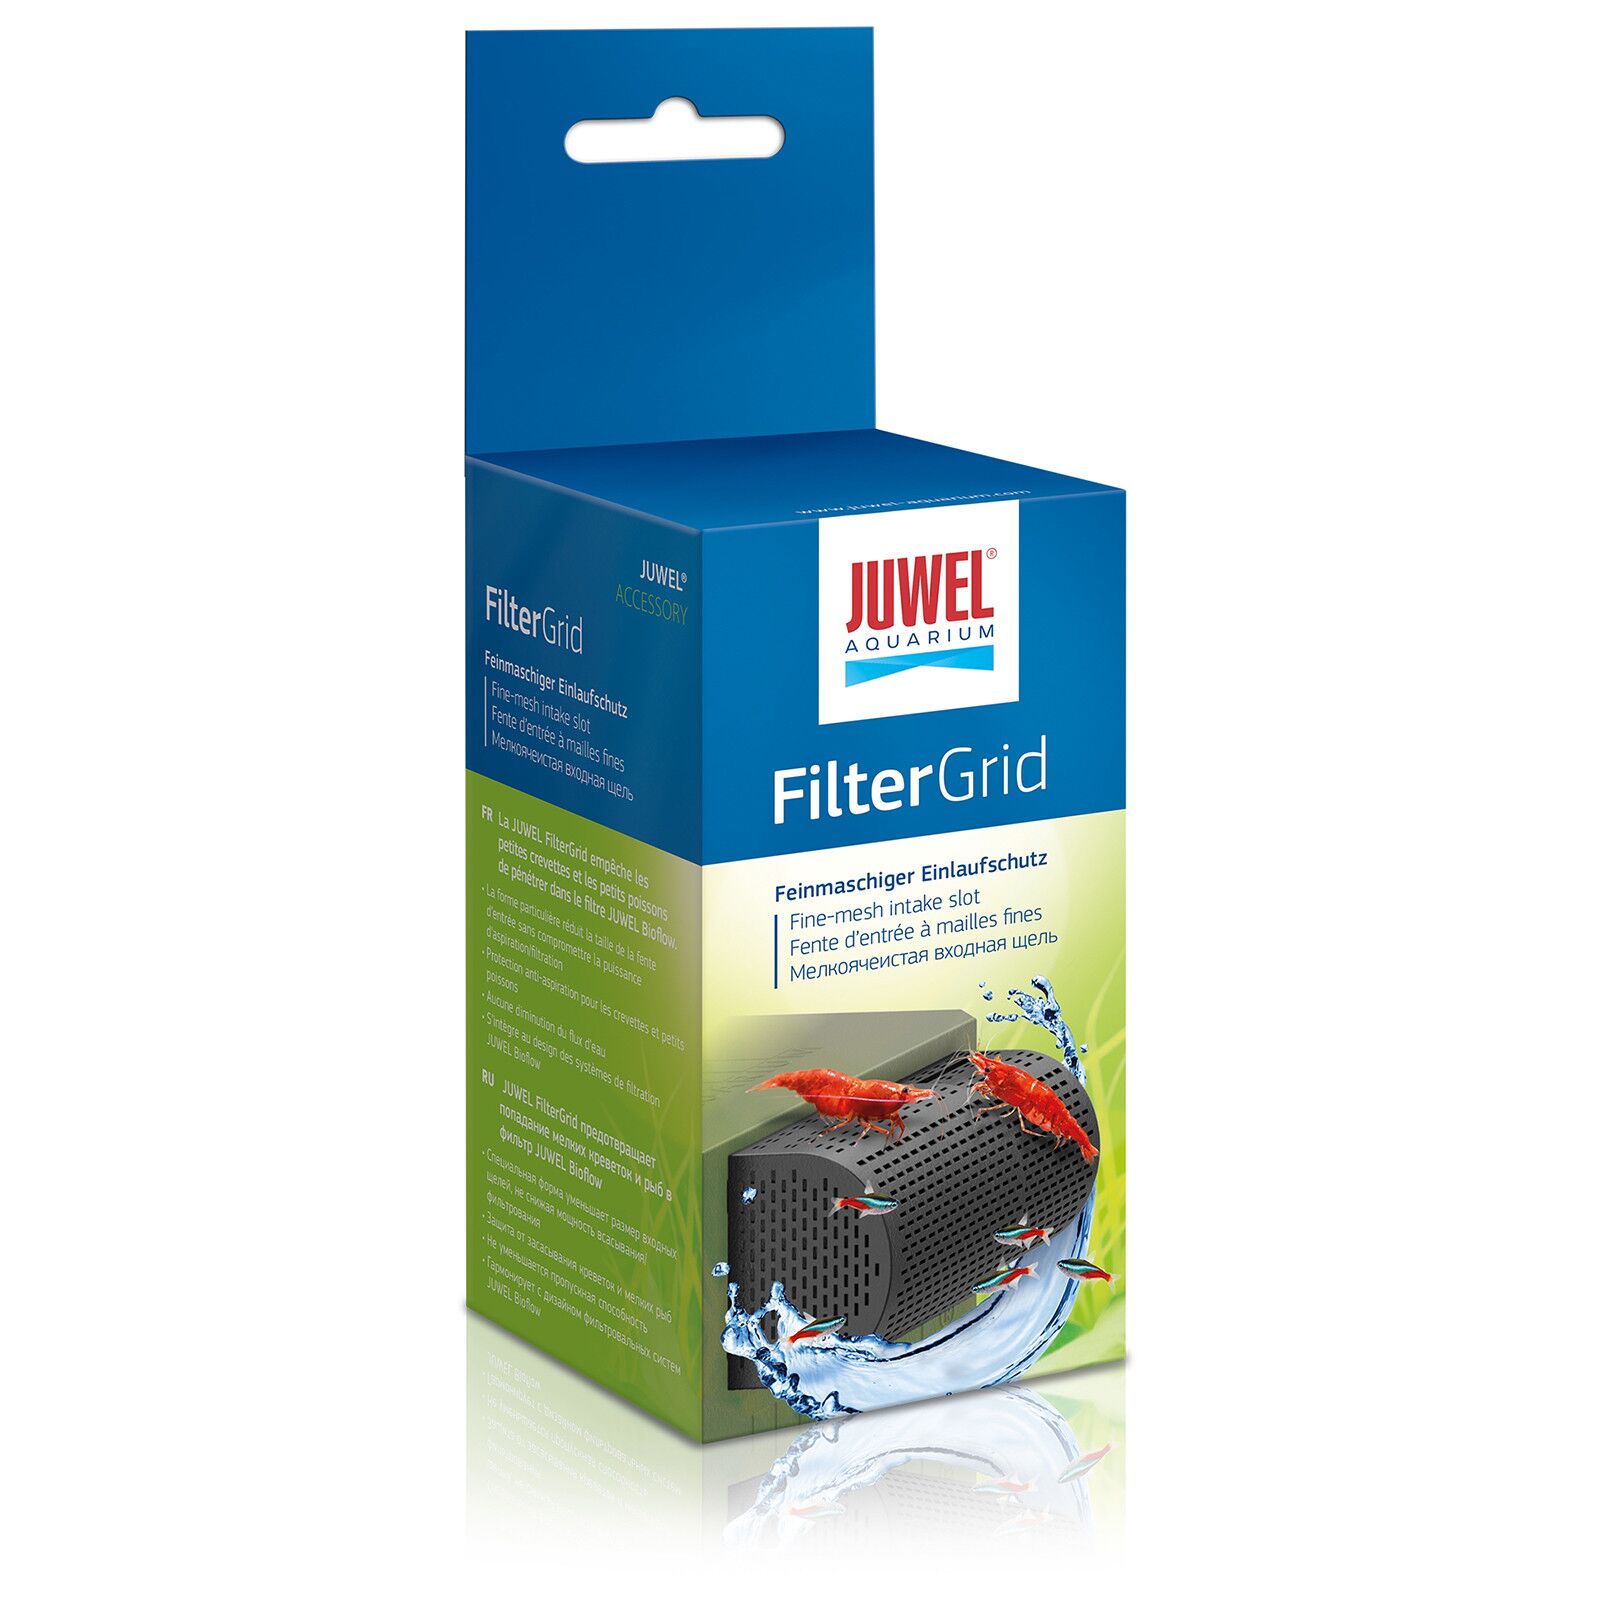 Juwel FilterGrid